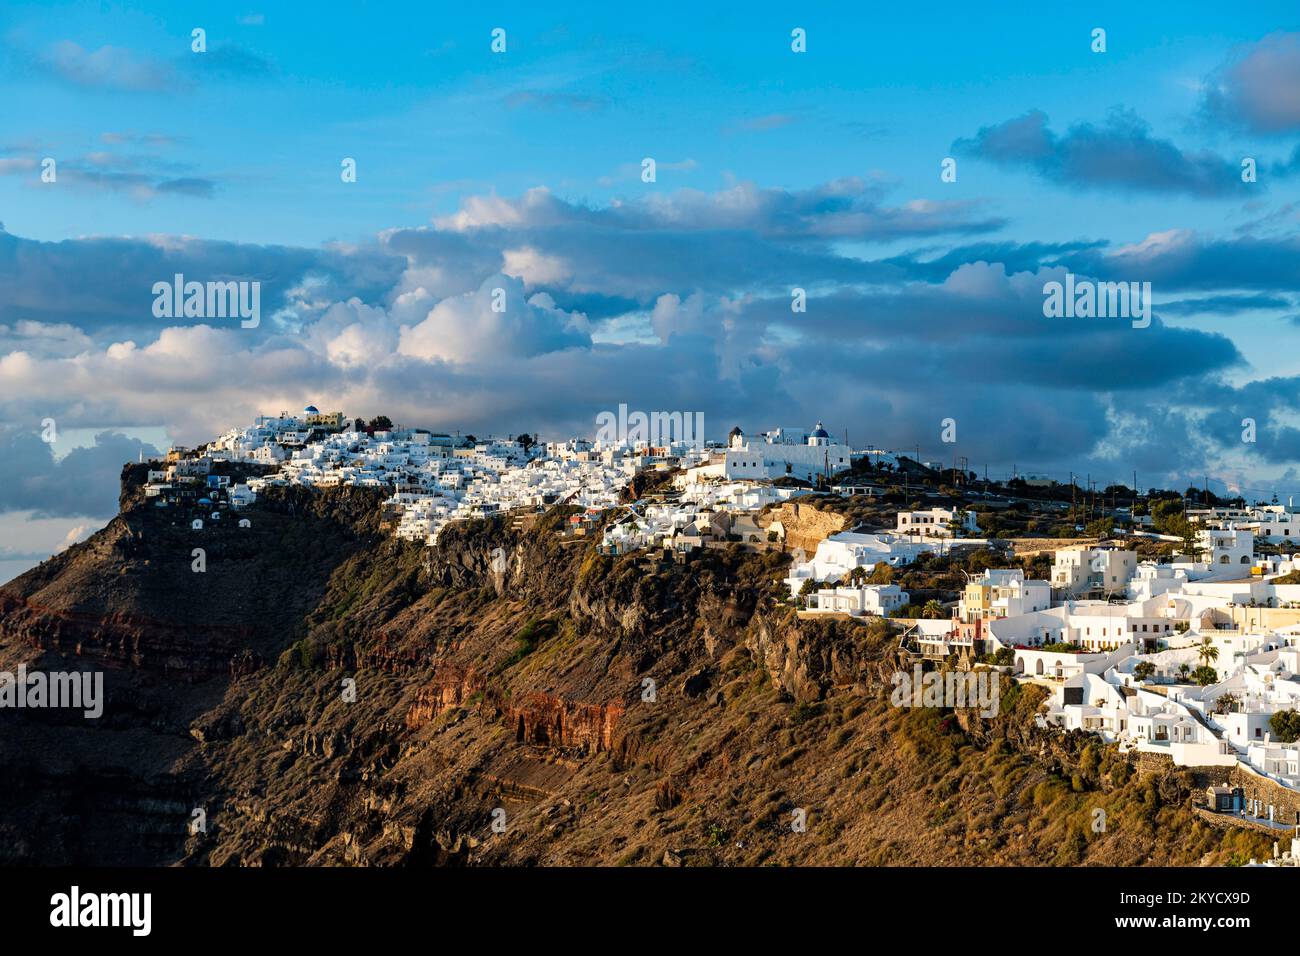 Maisons blanchies à la chaux sur la calderea, Fira, Santorini, Grèce Banque D'Images